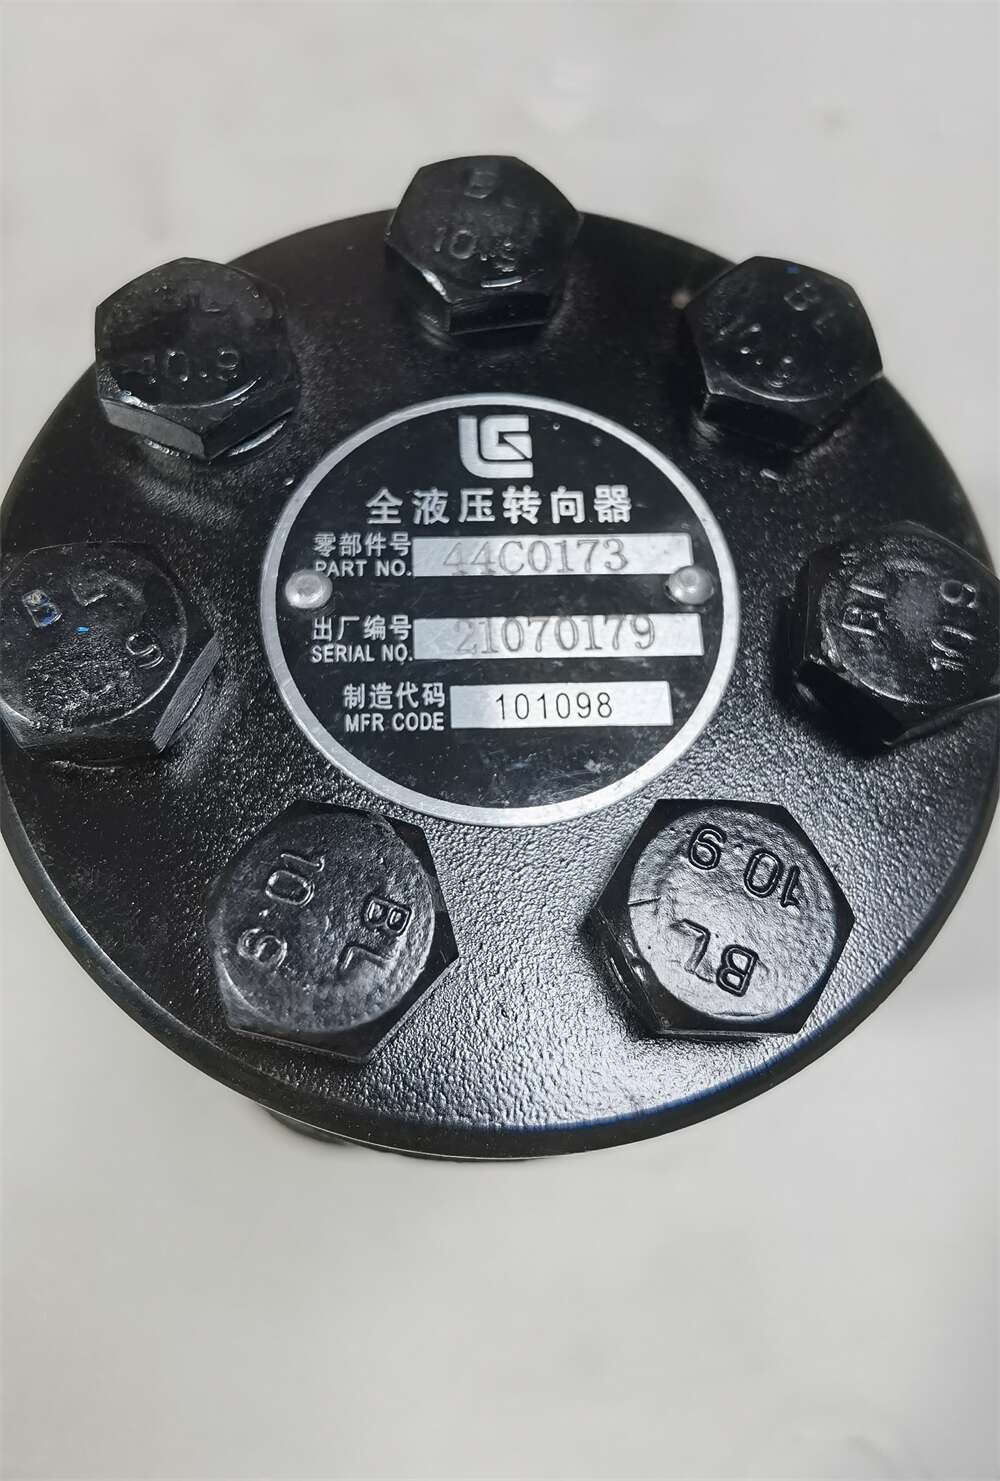 Liugong Loader Full Hydraulic Steering Gear 44C0173 BZZ3-125B